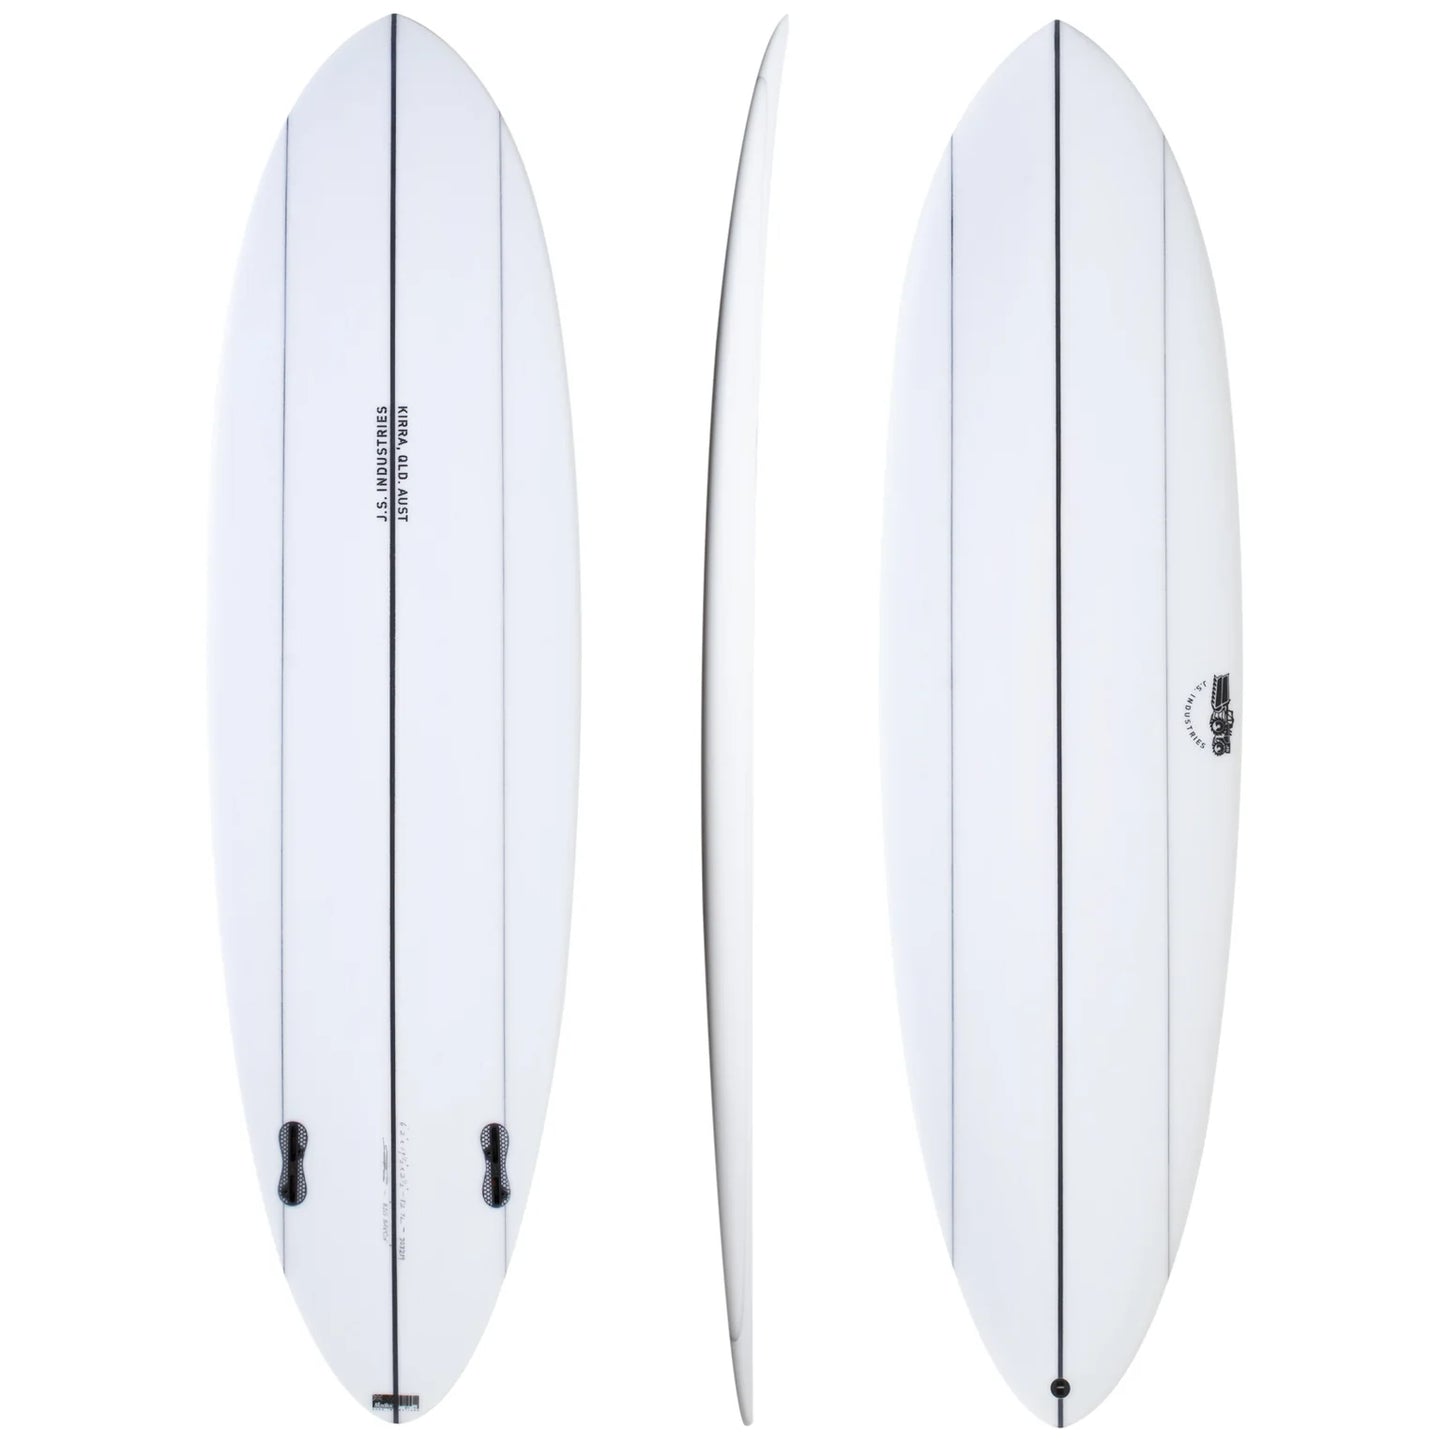 JS BIG BARON 7'6" SURFBOARD